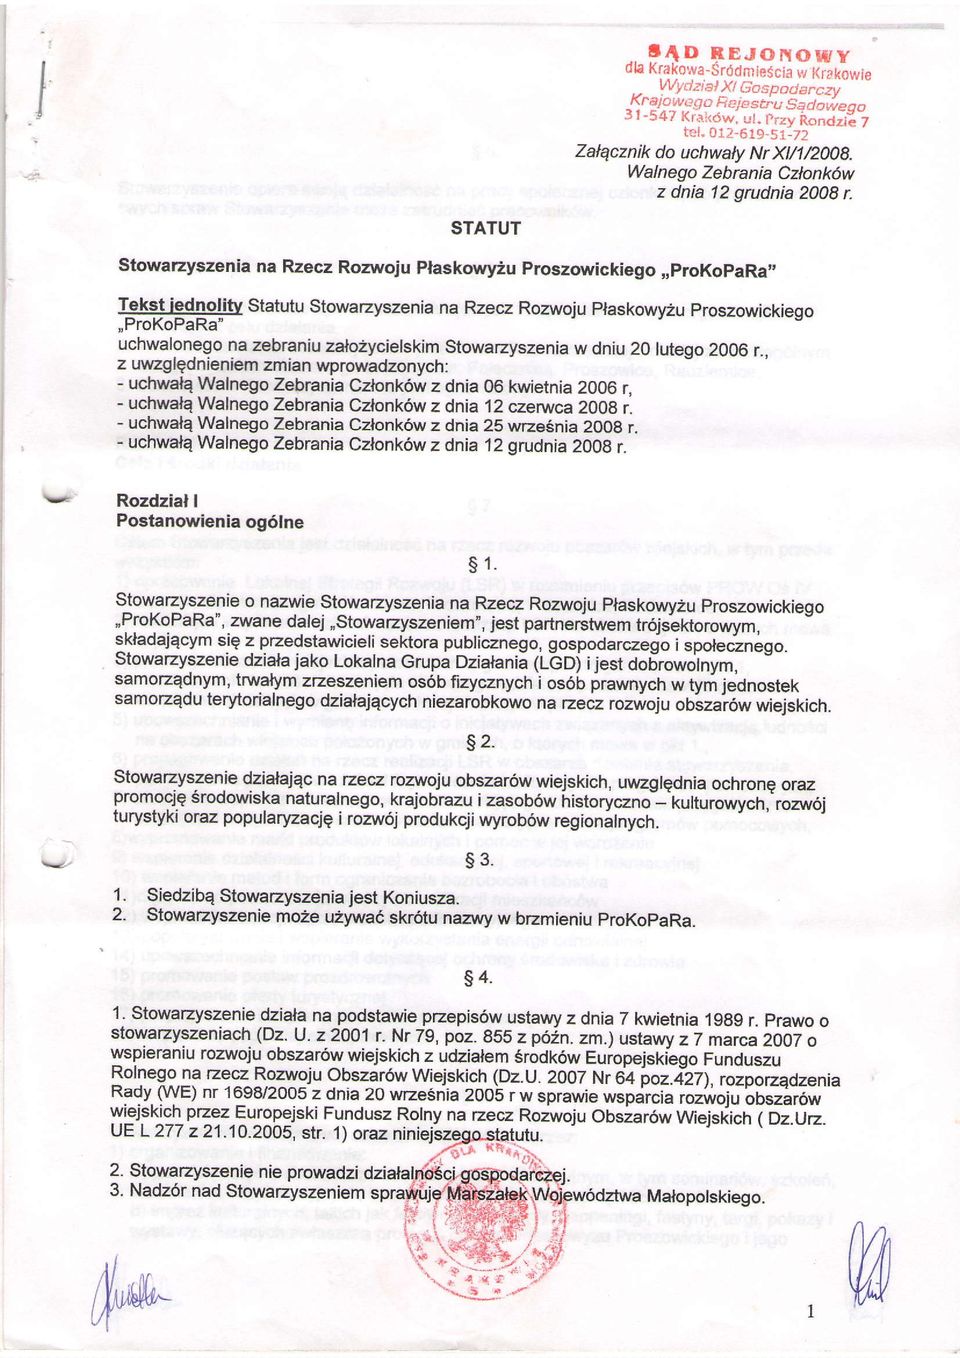 igd4olitv statutu stowarzyszenia na Rzecz Rozwoju plaskowy2u proszowickiego,,prokopara' uchwafonego na zeb.aniu zalo2ycielskim stowarzyszenia w dniu 20 lutego 2006 r.